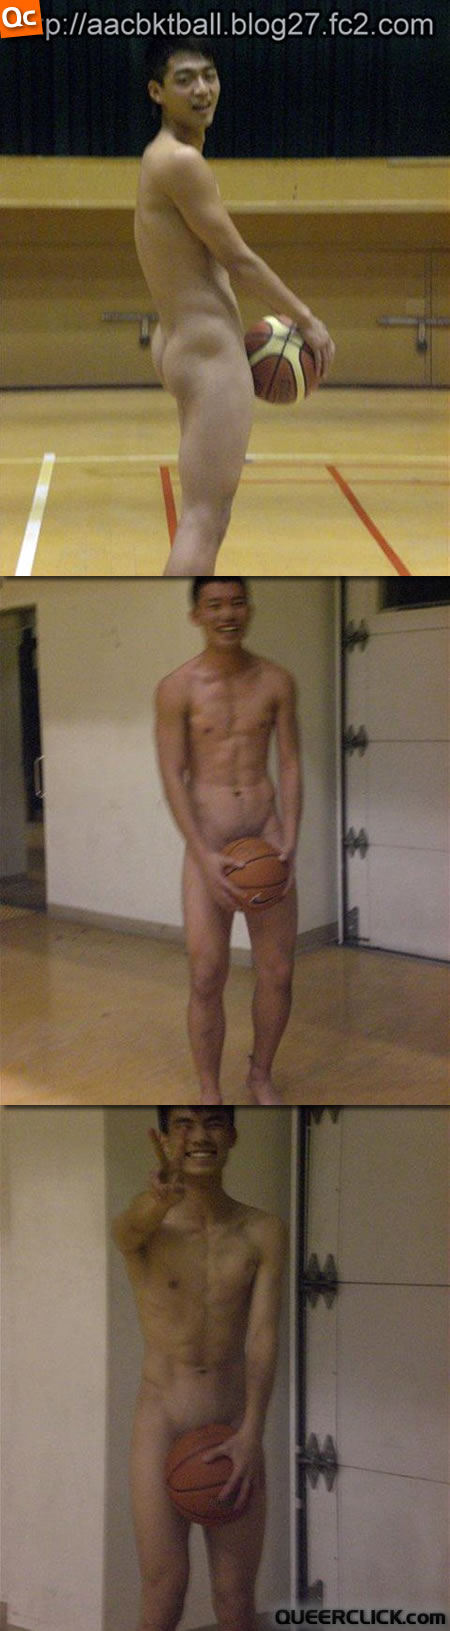 赤裸籃球手